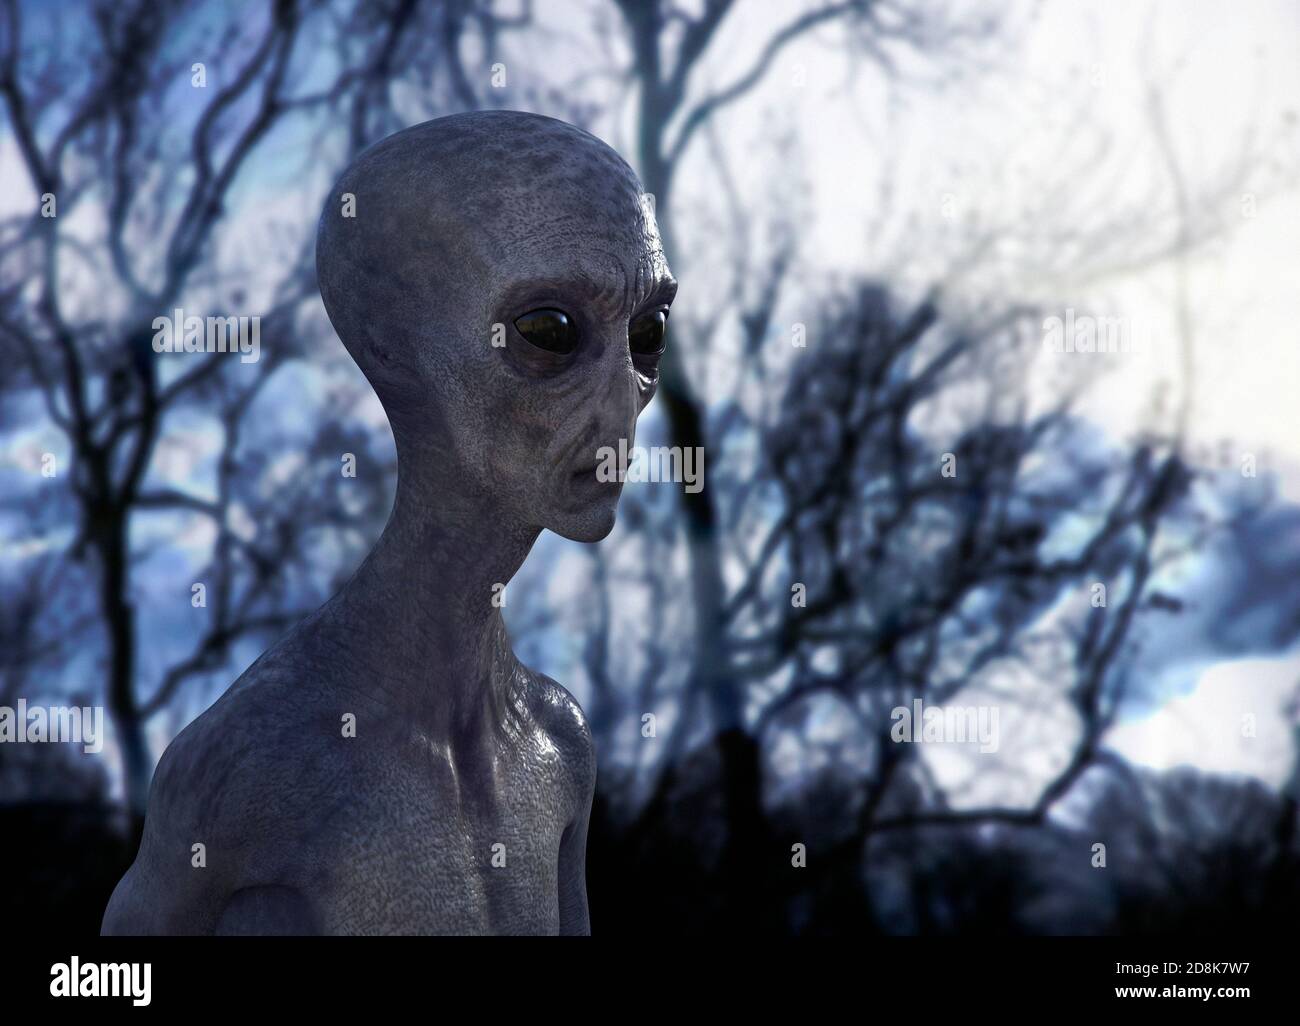 Alien, illustration. Stock Photo